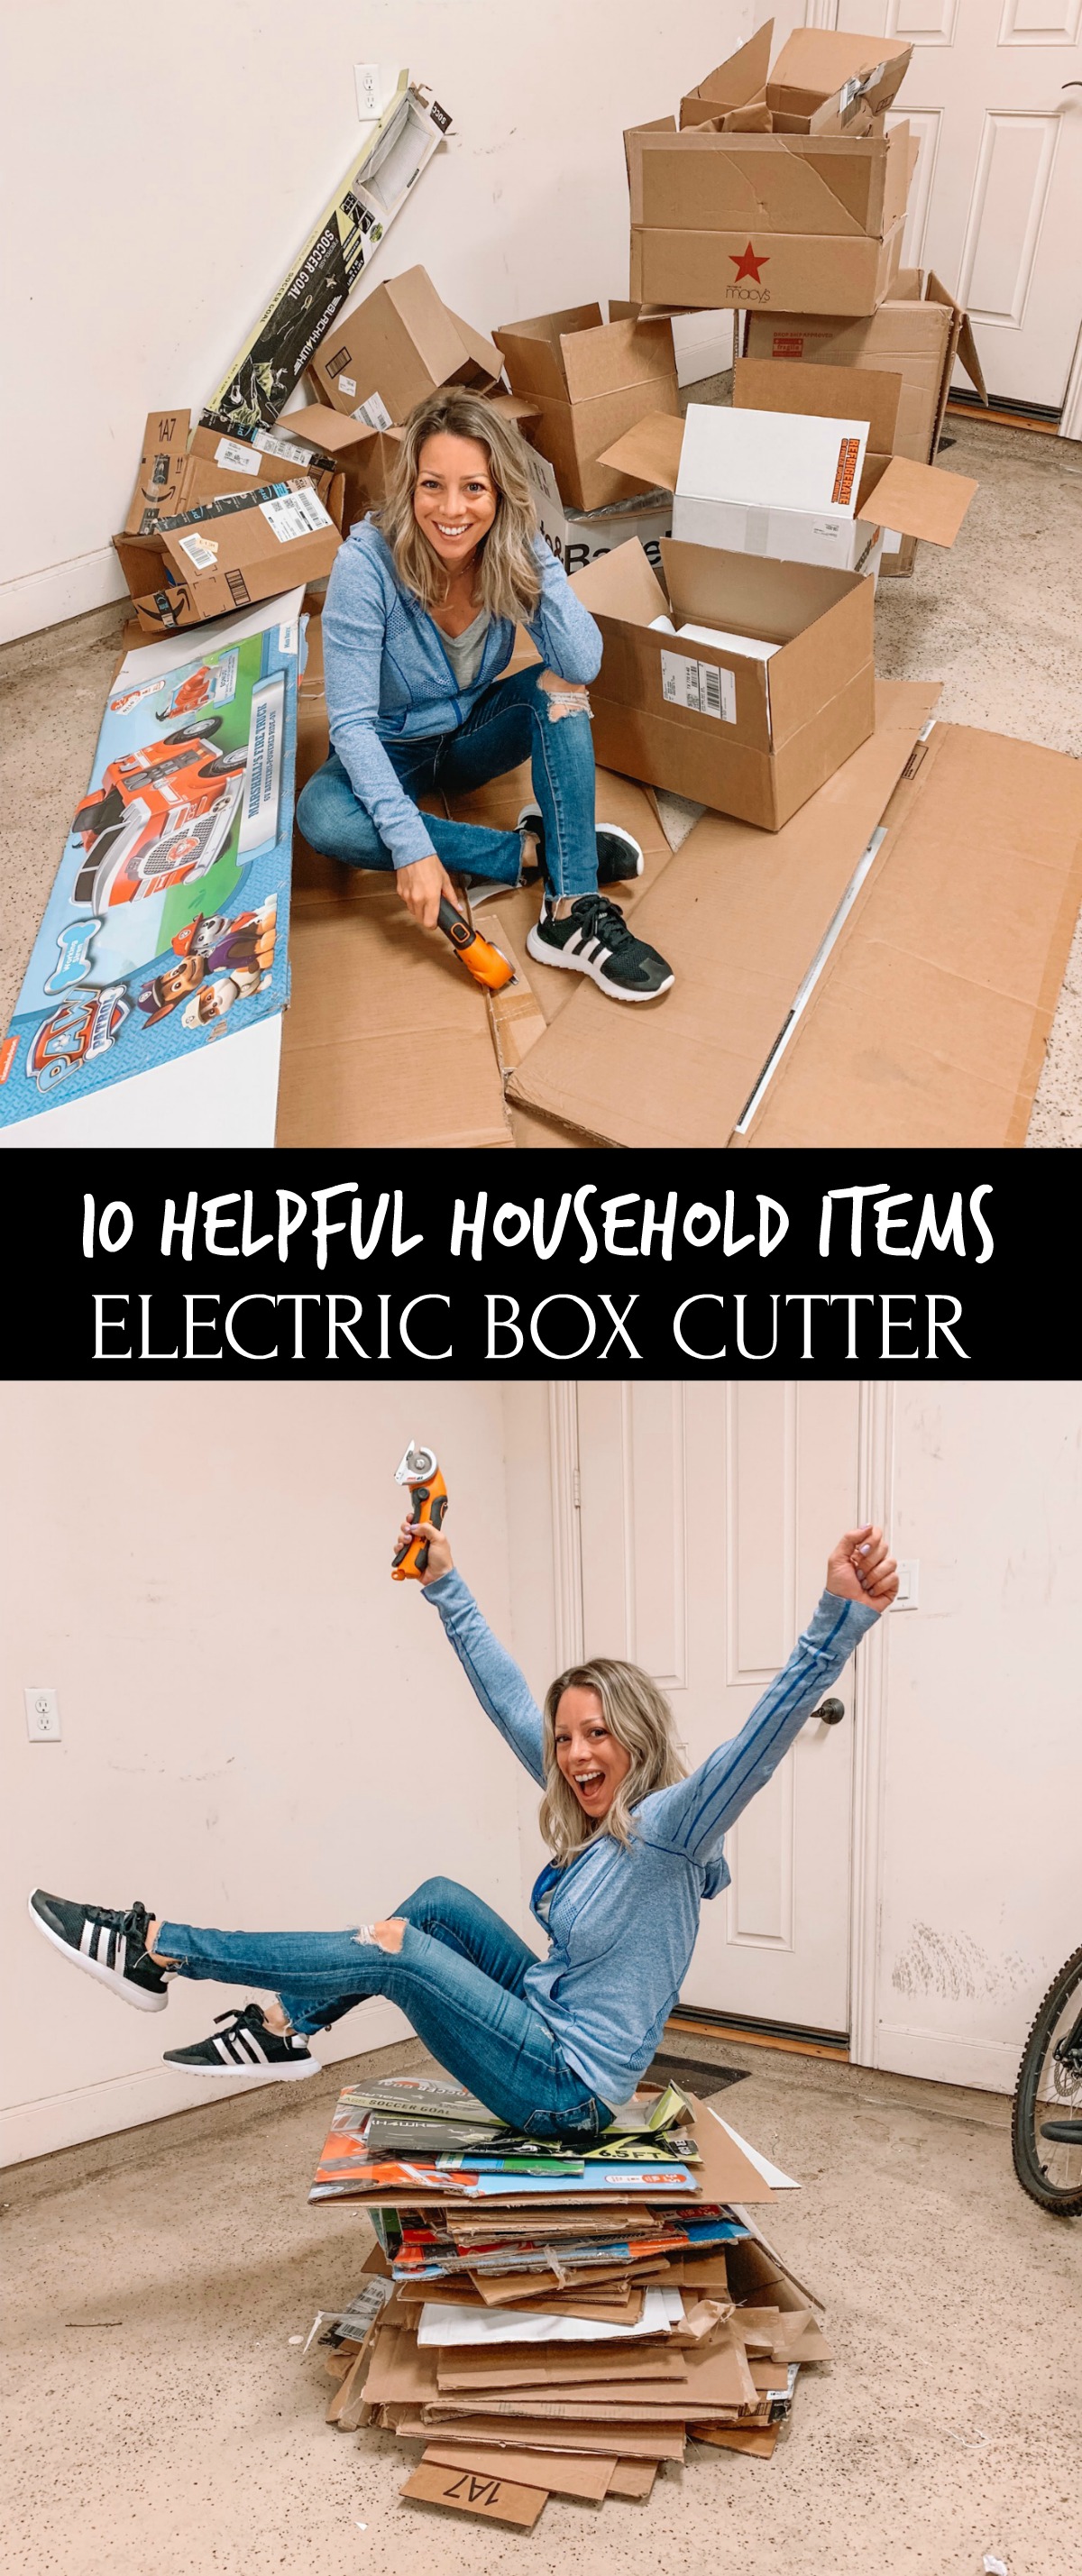 Electric Box Cutter